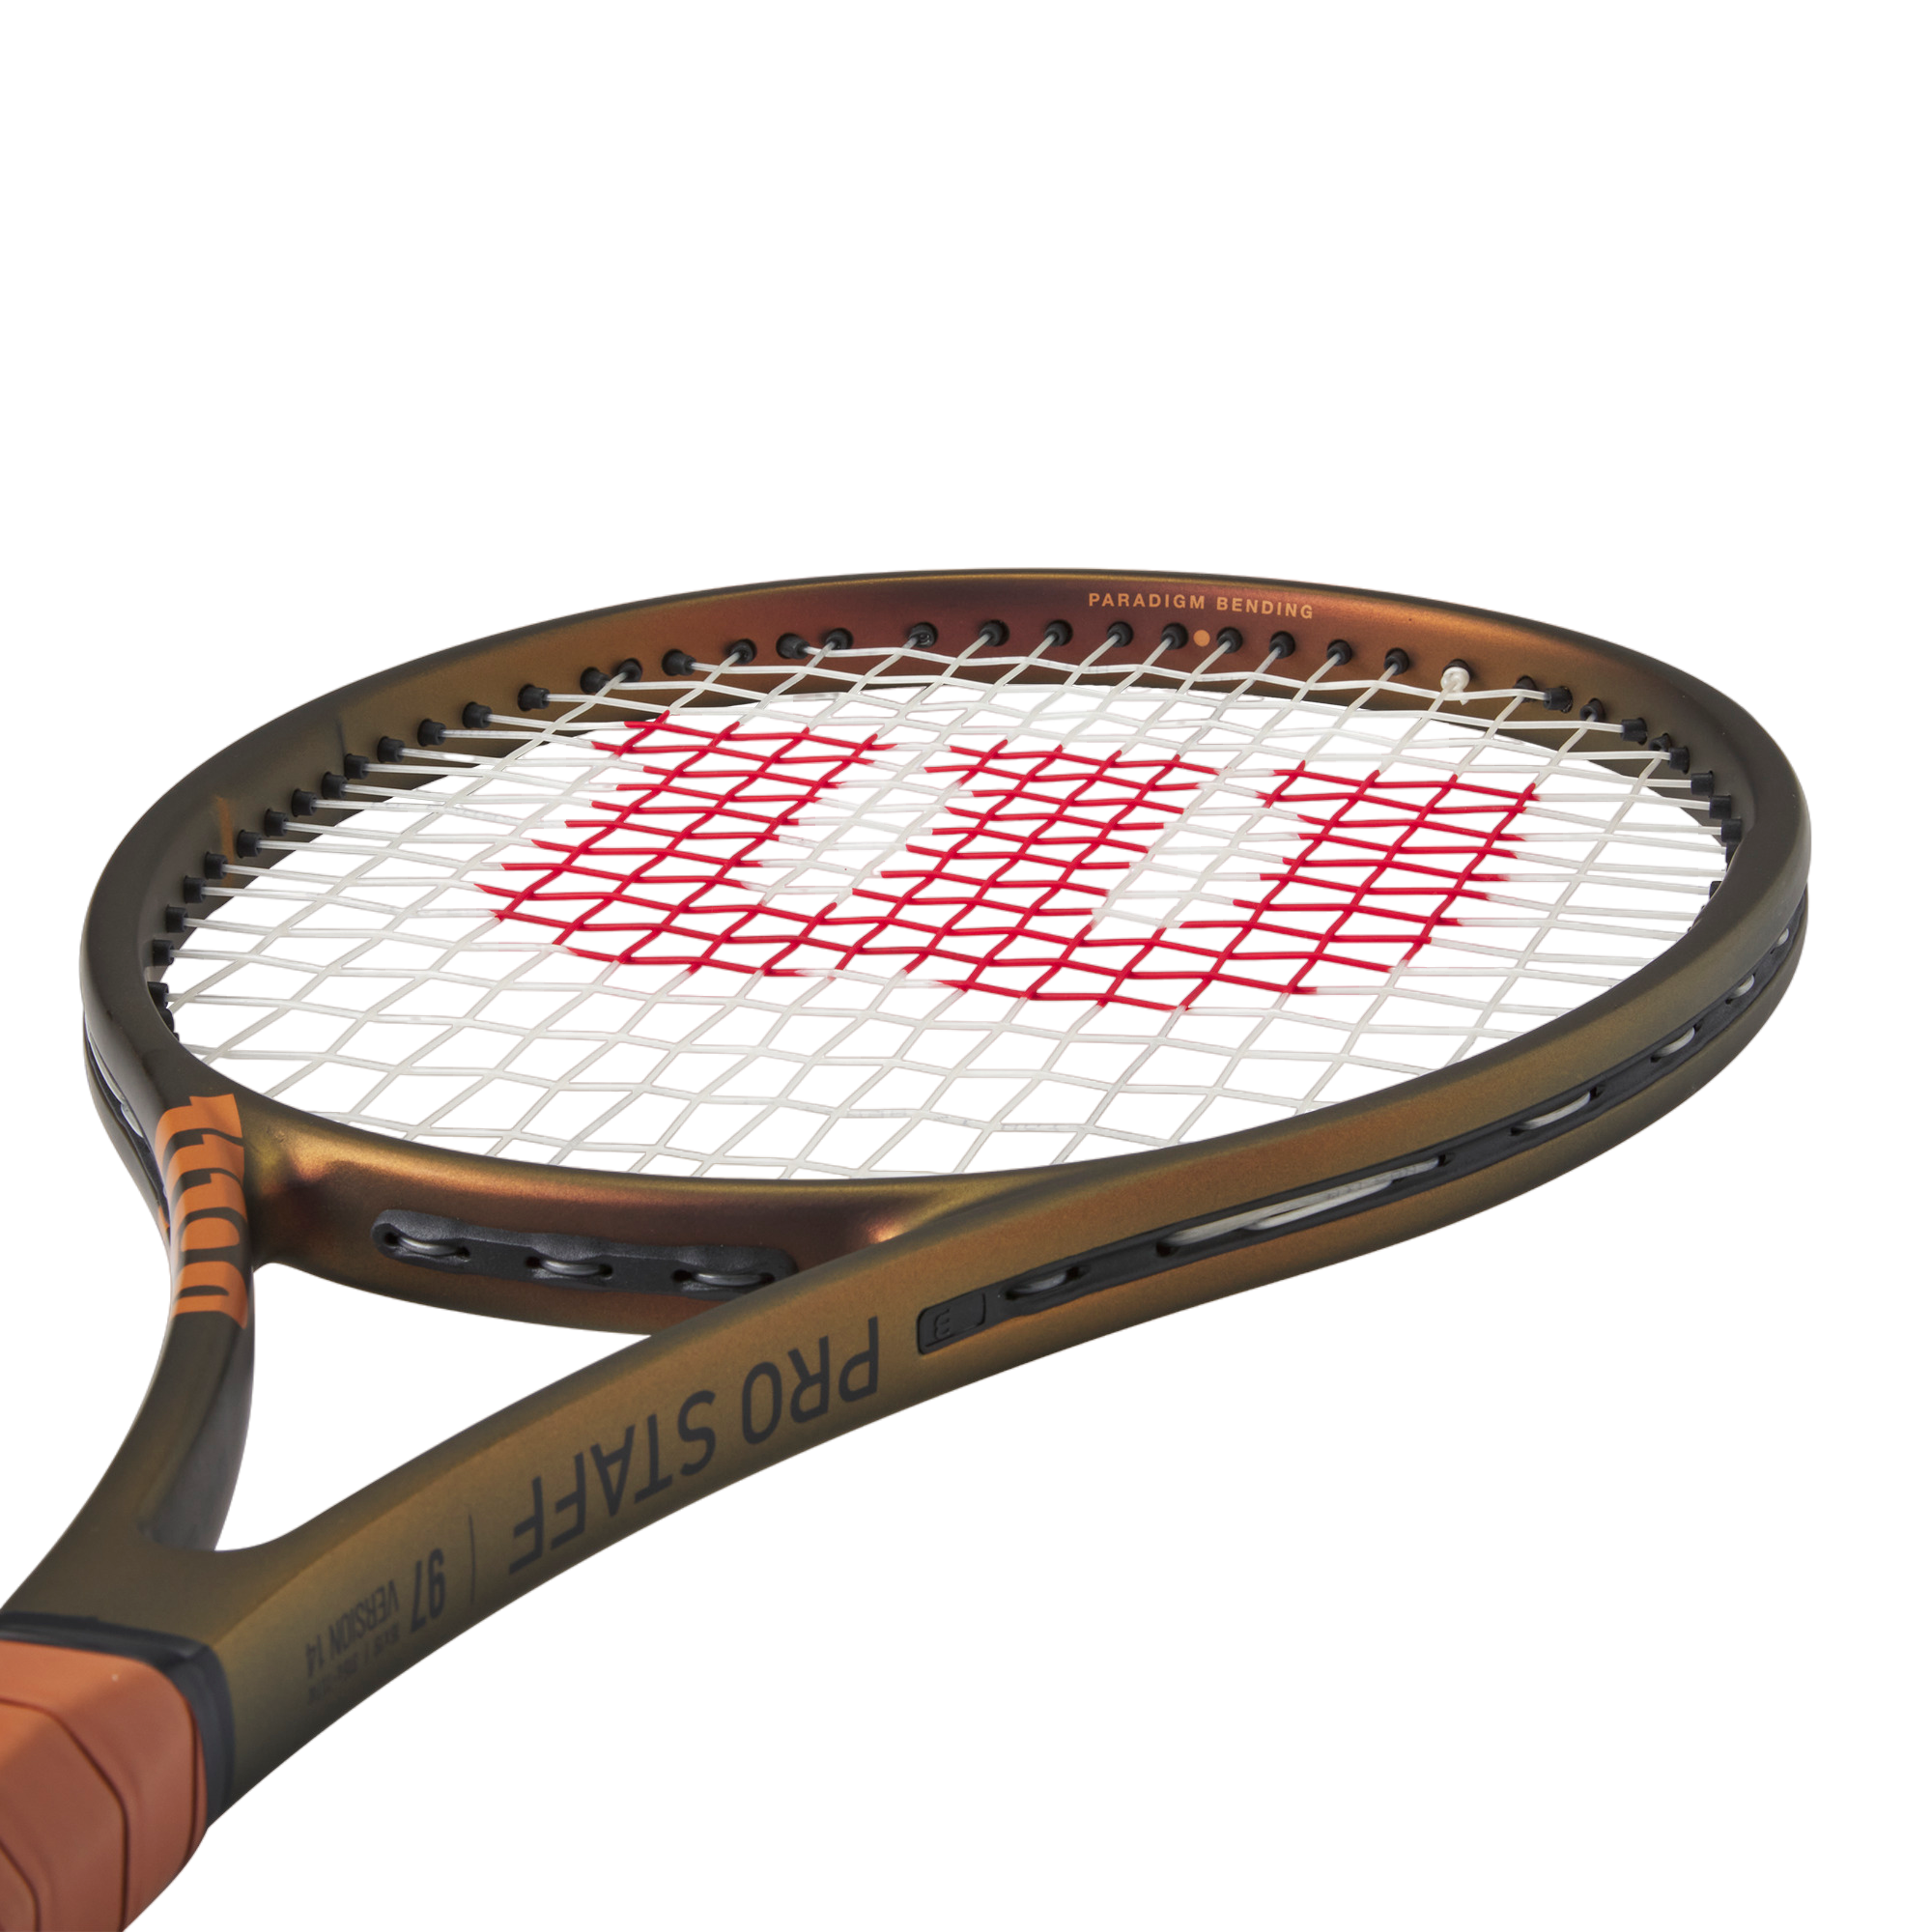 Pro Staff 97 V14.0 Tennis Racquet